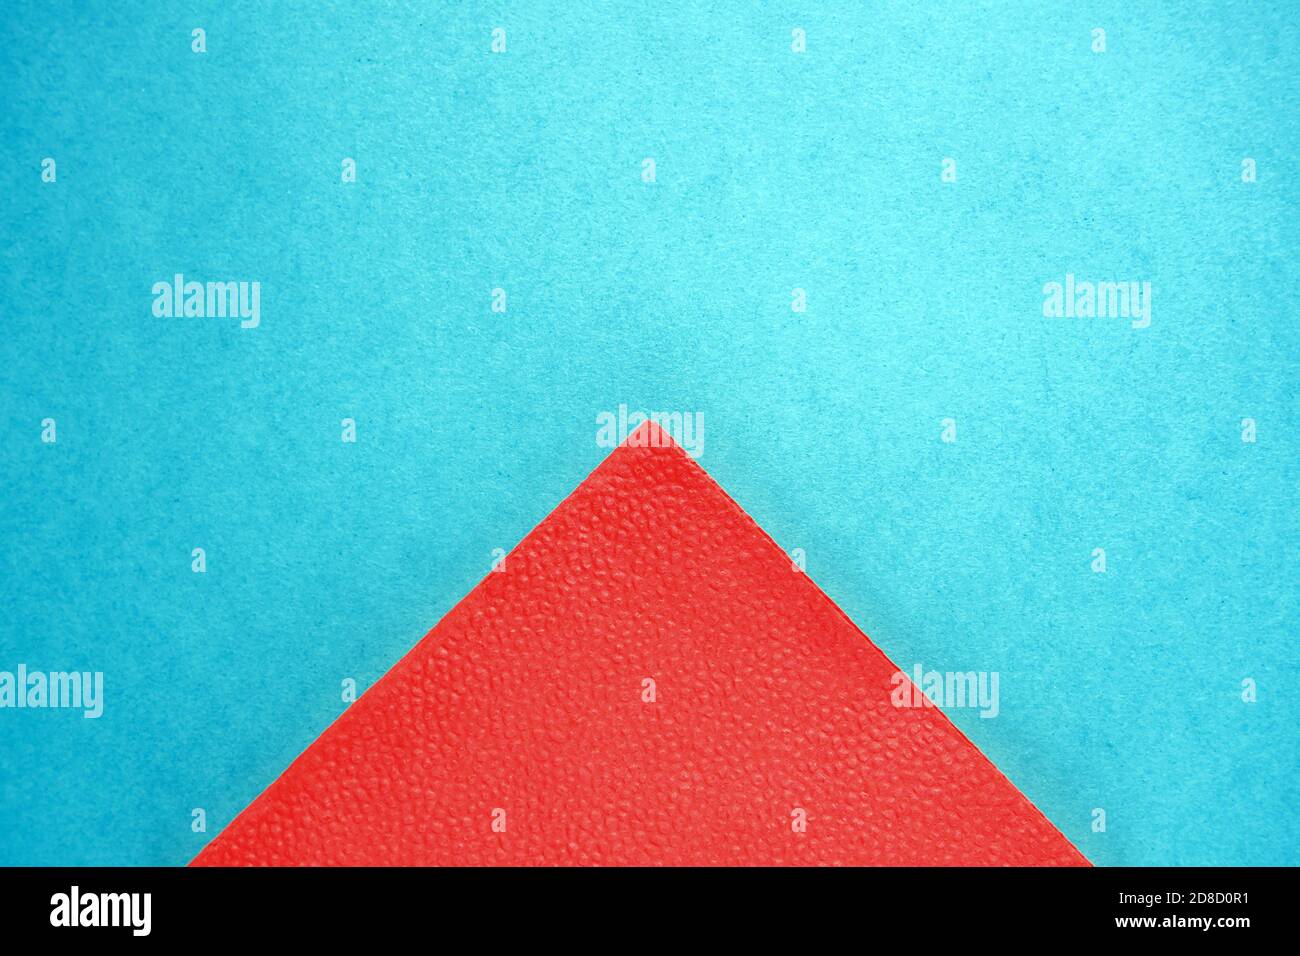 partie triangulaire de la serviette en papier rouge sur fond de carton bleu, espace de copie, vue de dessus Banque D'Images